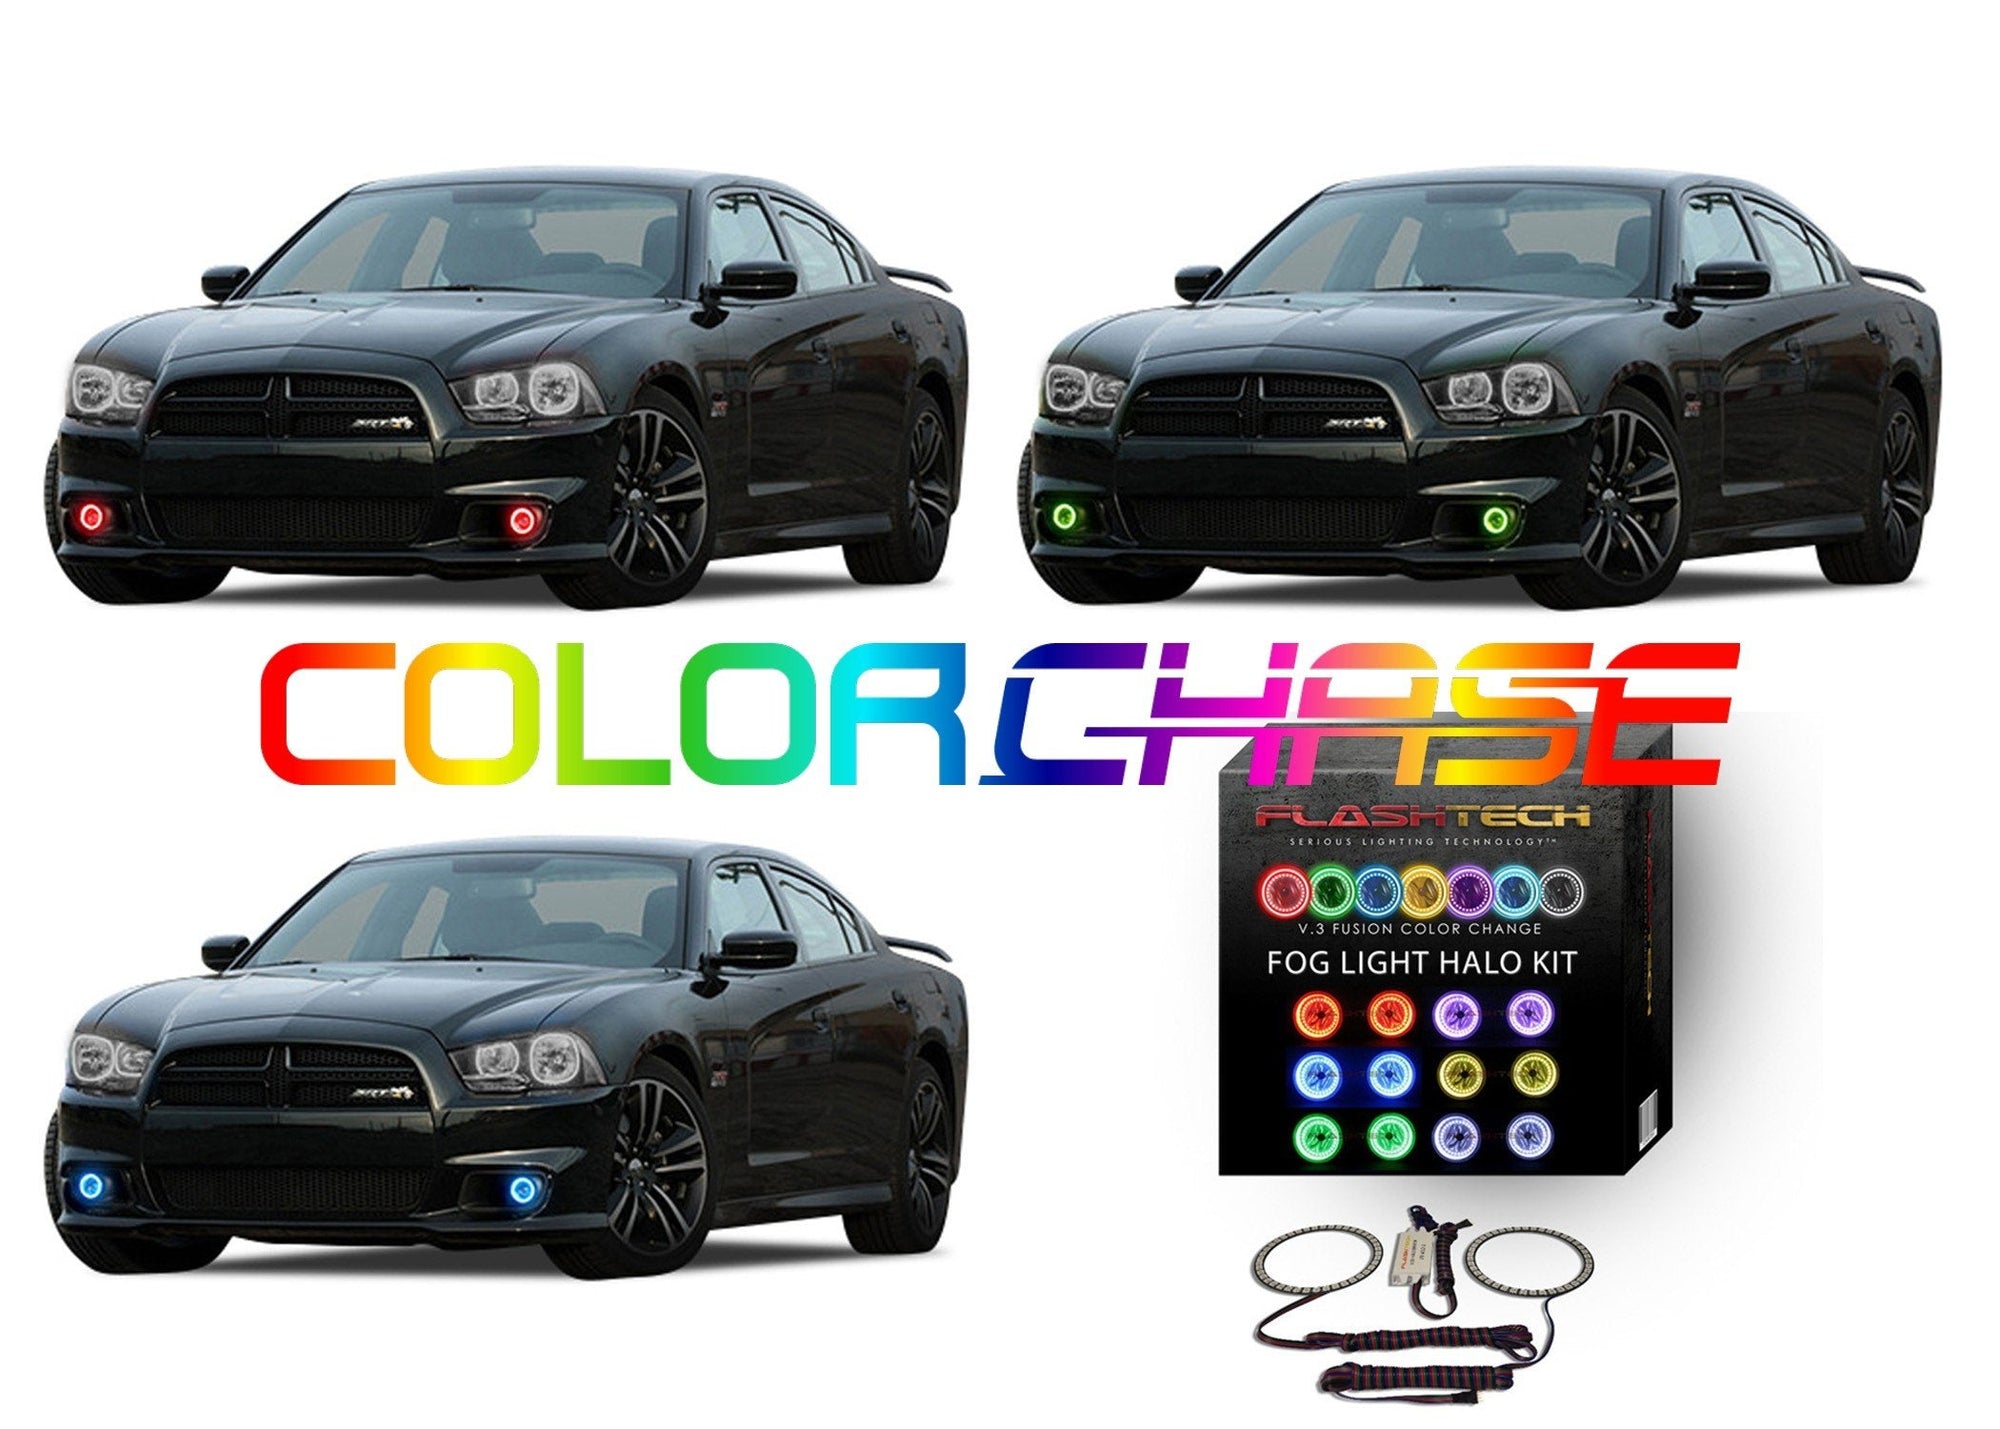 Dodge Charger ColorChase LED Halo Fog Light Kit 2011-2014